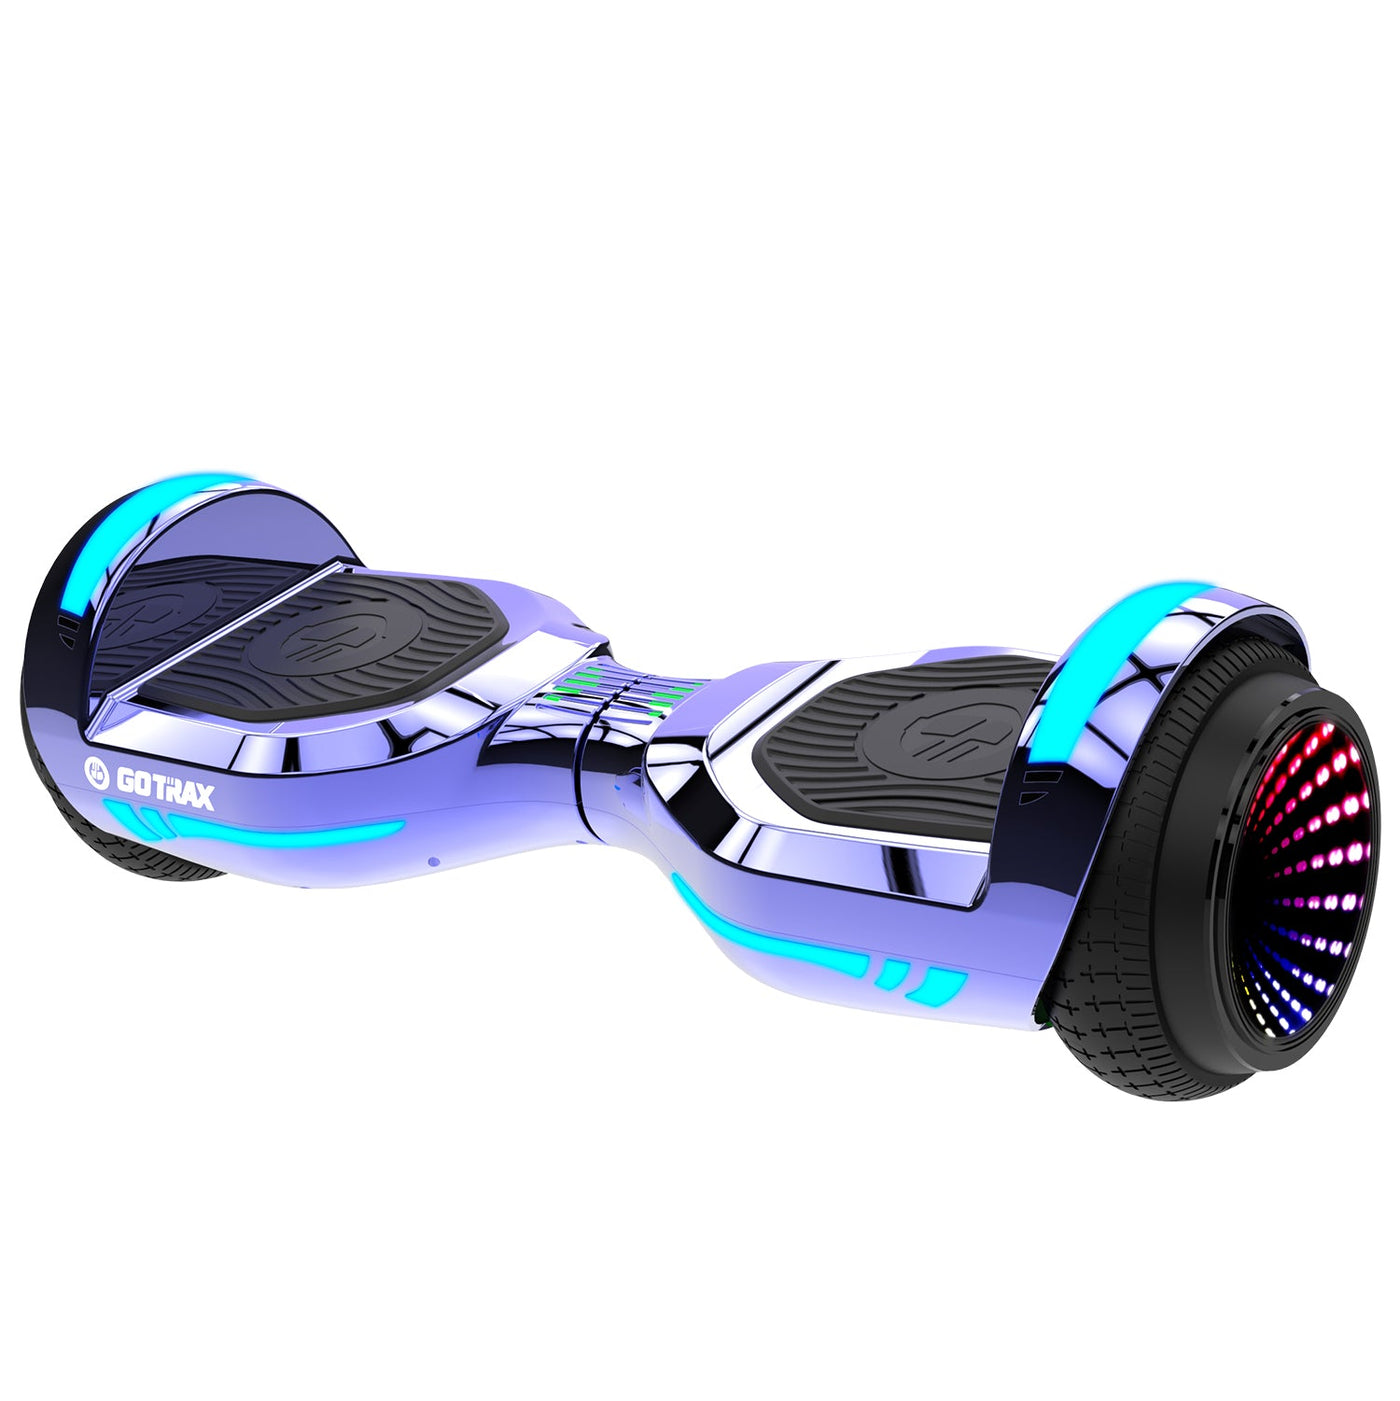 Glide Pro Hoverboard 6.5" - GOTRAX